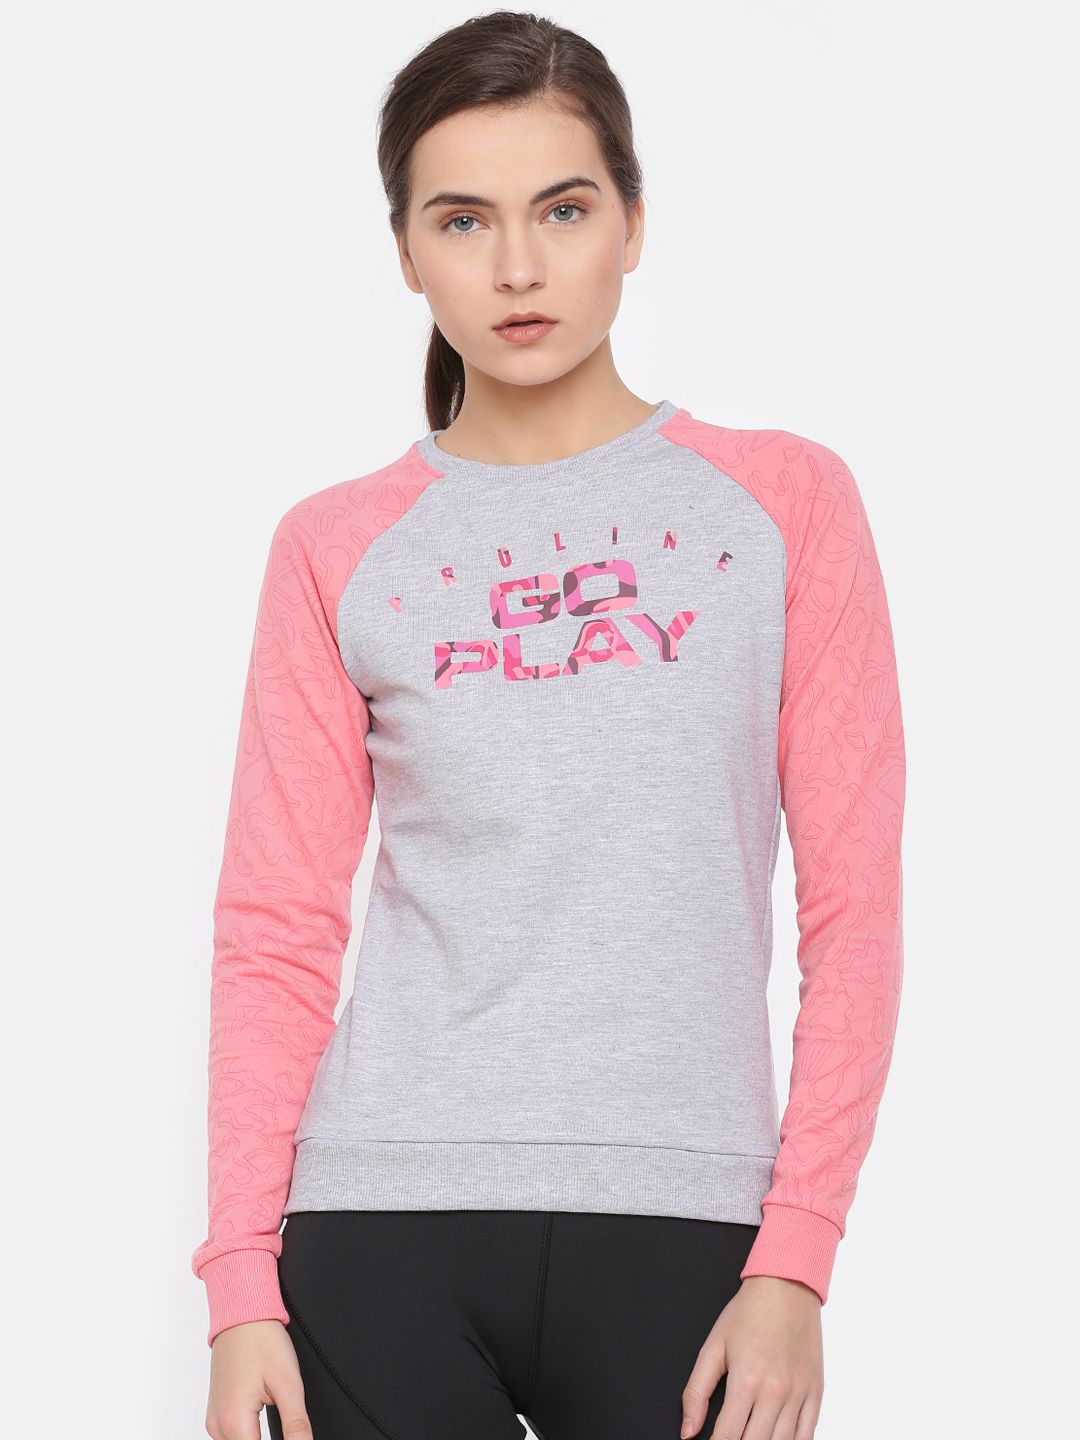 Proline Active Women Grey & Pink Printed Sweatshirt Price in India